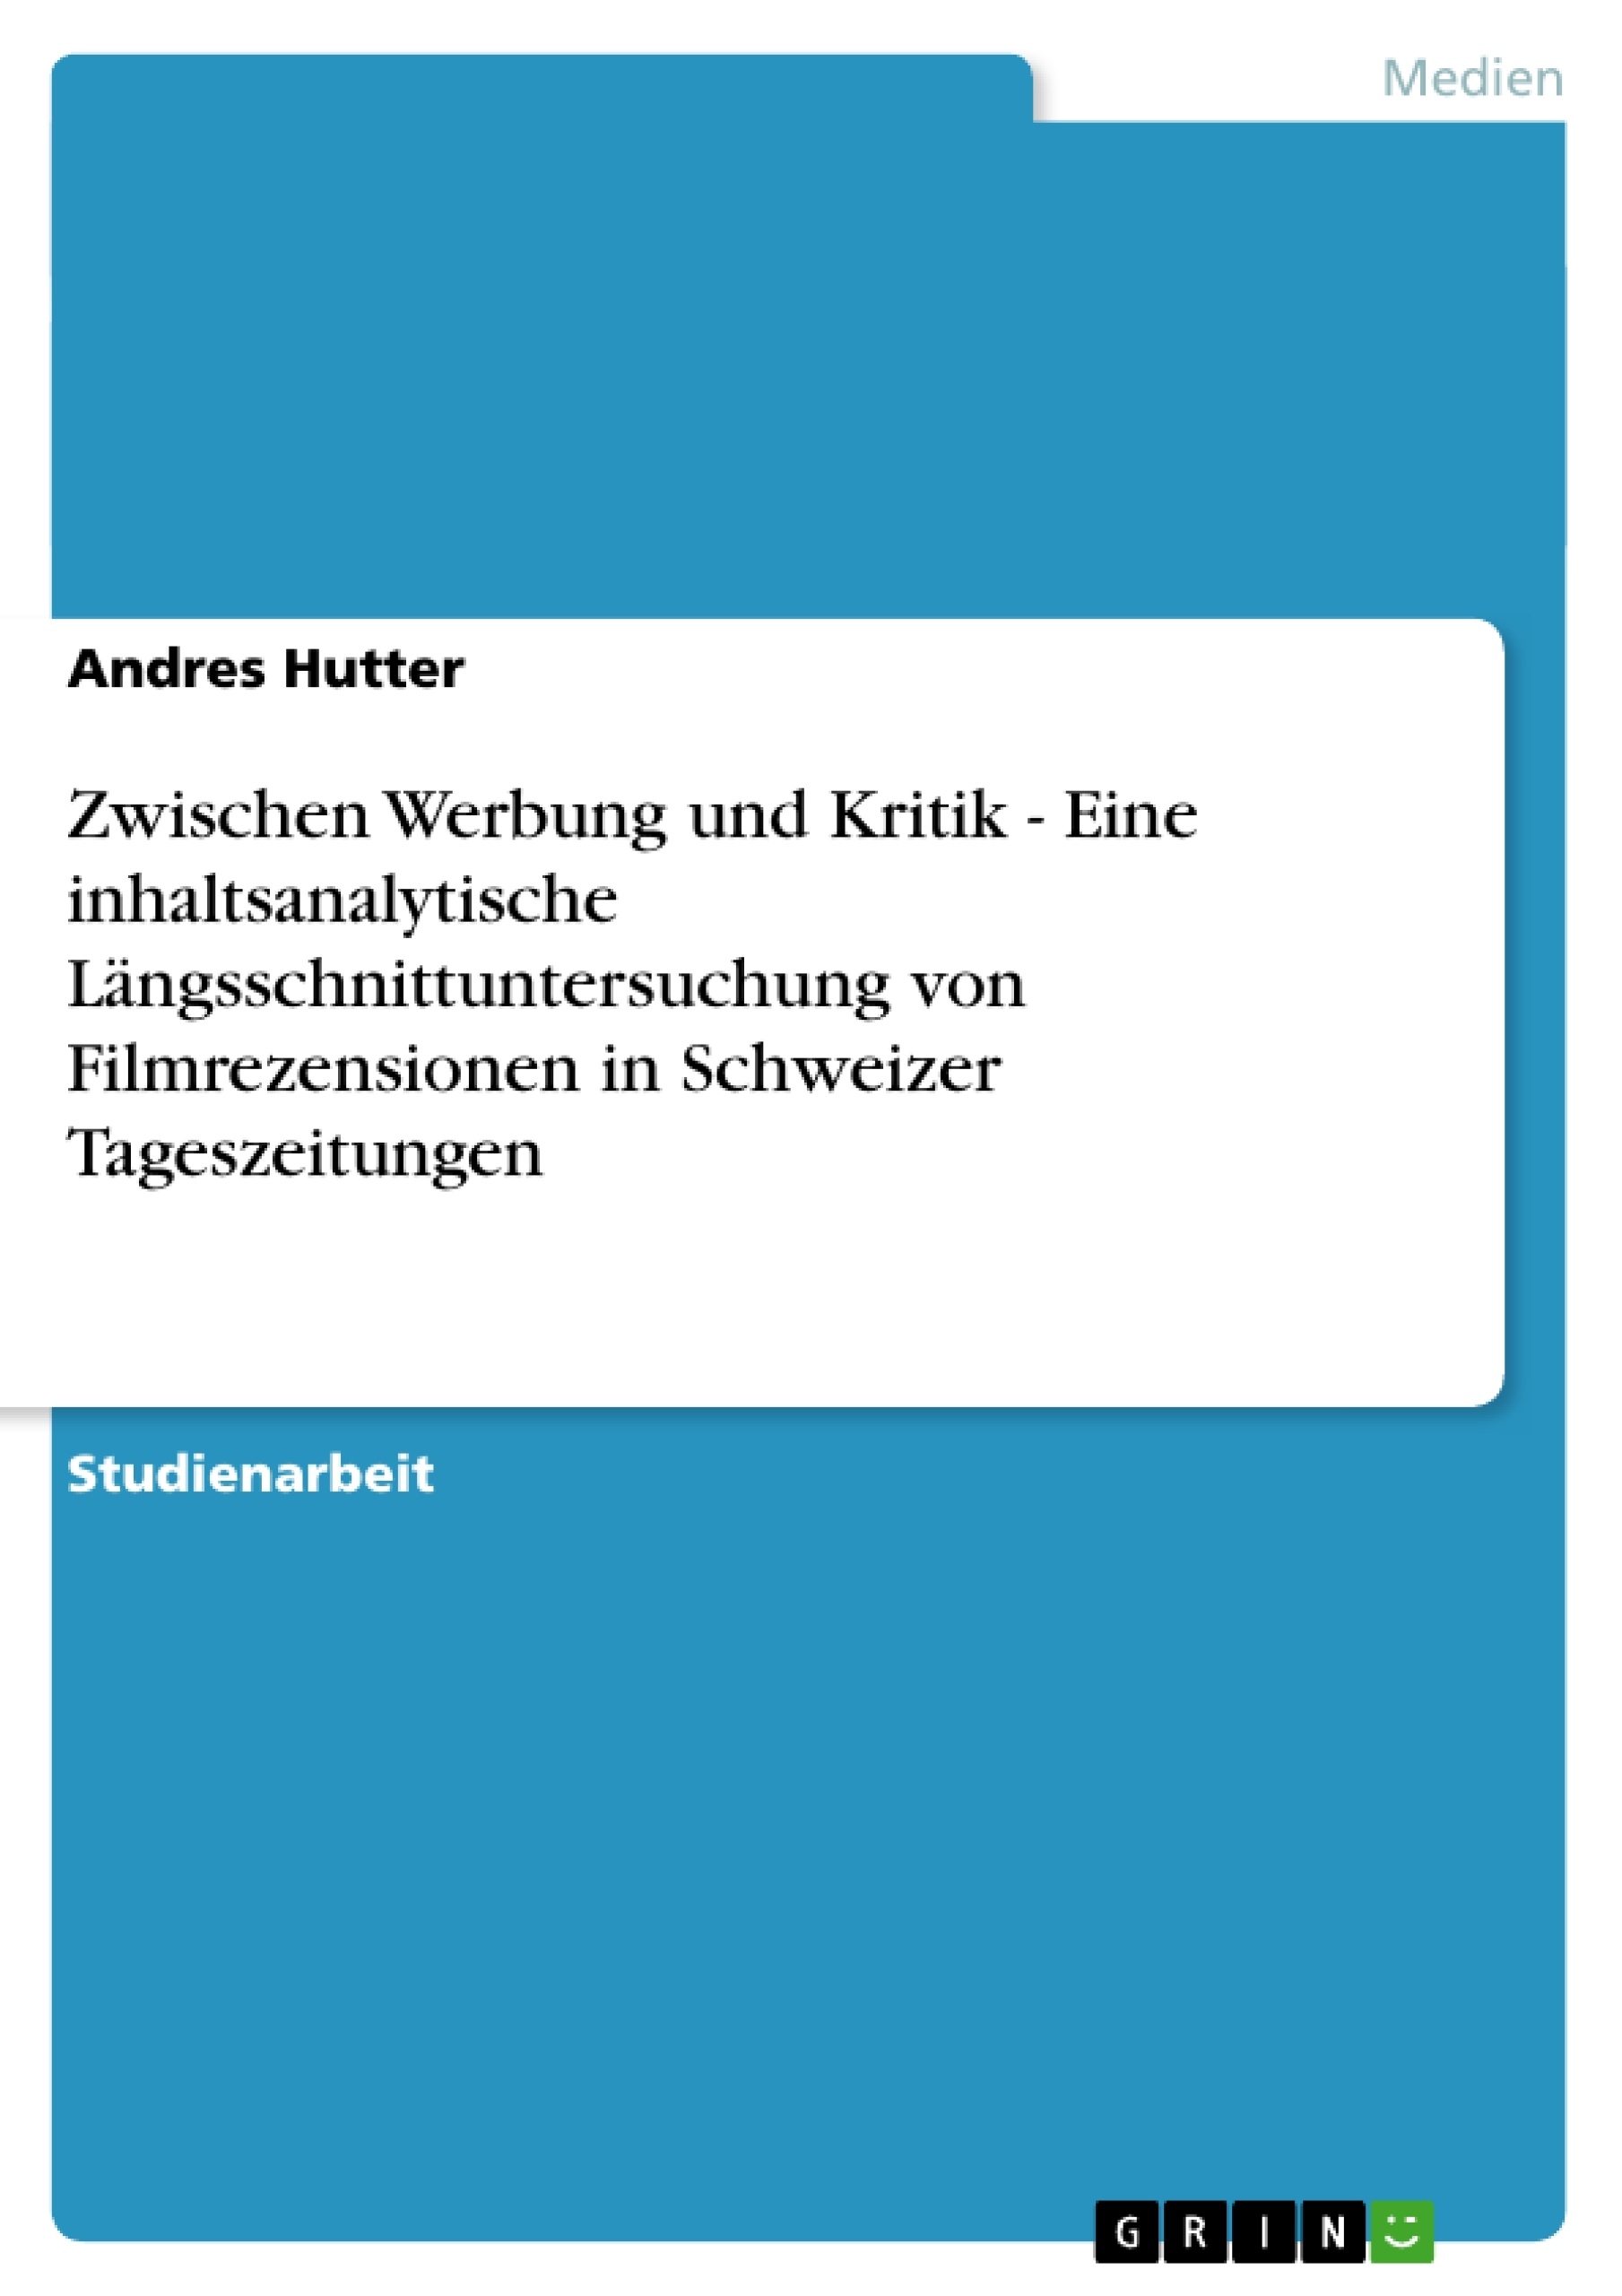 Título: Zwischen Werbung und Kritik  -  Eine inhaltsanalytische Längsschnittuntersuchung von Filmrezensionen in Schweizer Tageszeitungen